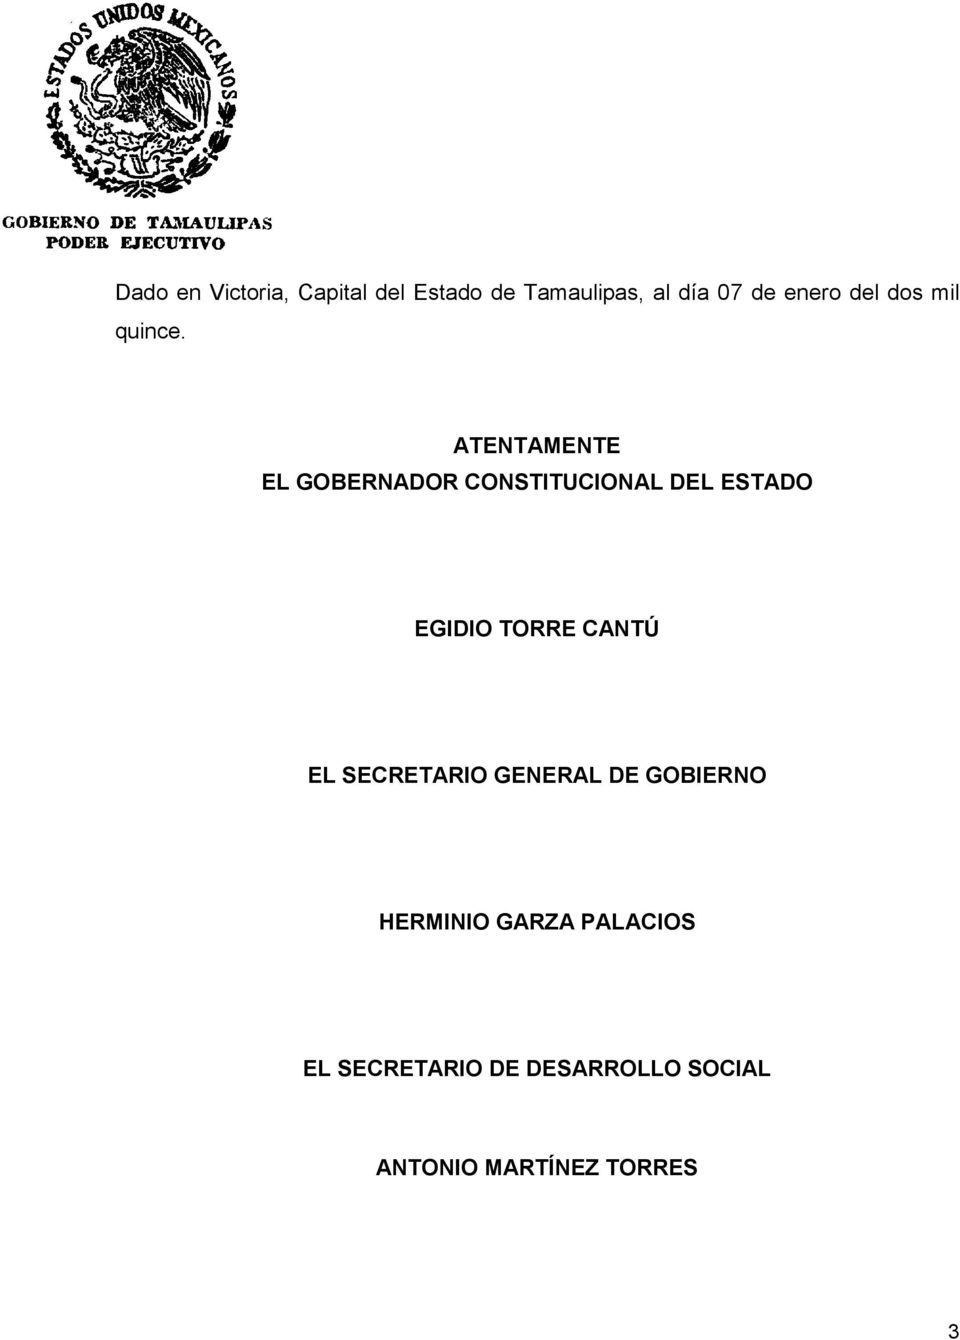 ATENTAMENTE EL GOBERNADOR CONSTITUCIONAL DEL ESTADO EGIDIO TORRE